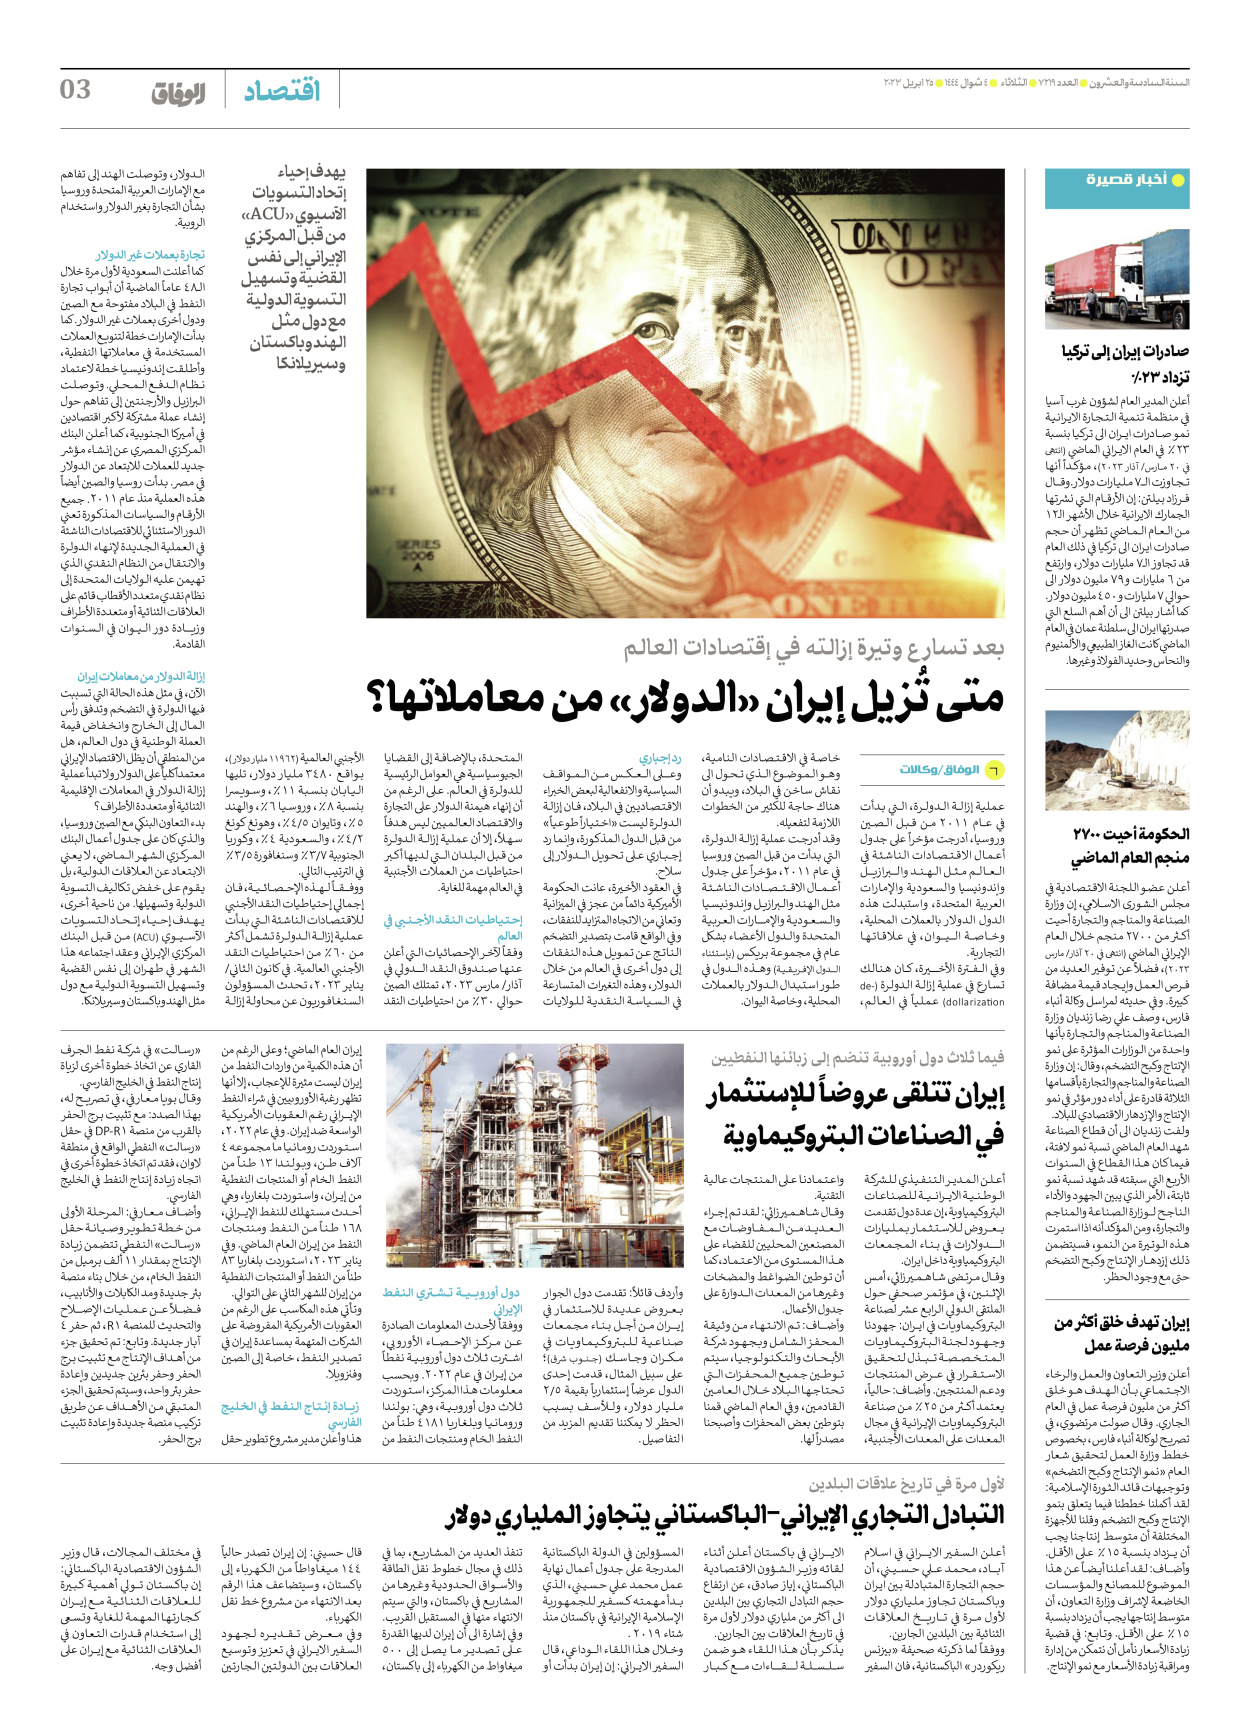 صحیفة ایران الدولیة الوفاق - العدد سبعة آلاف ومائتان وتسعة عشر - ٢٥ أبريل ٢٠٢٣ - الصفحة ۳